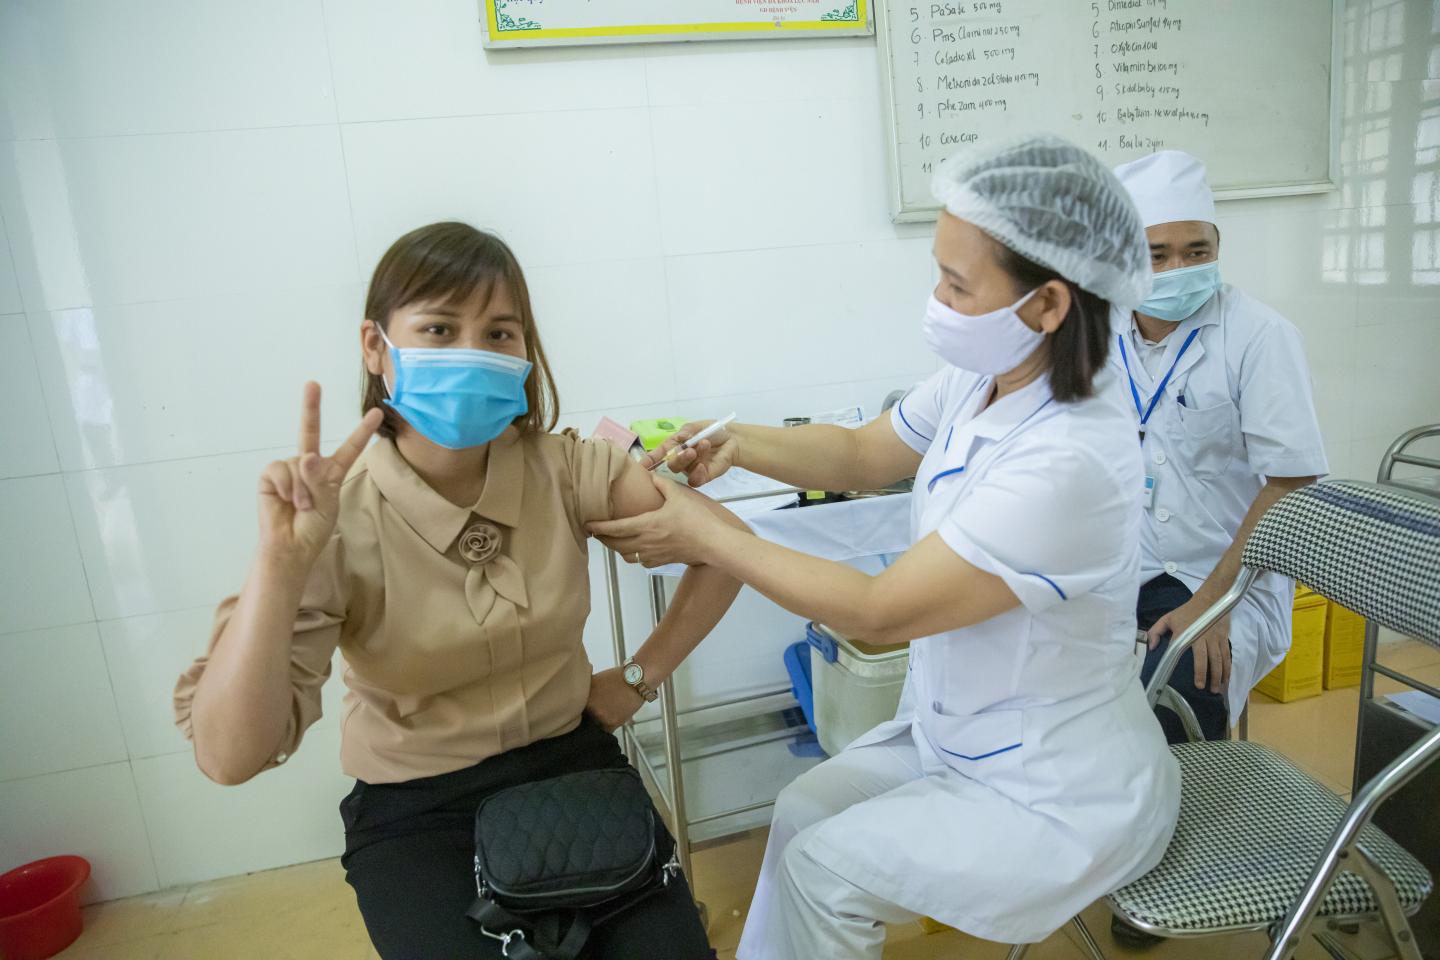 Các mũi tiêm ở Việt Nam sẽ được “chuẩn thuận” ở Hungary theo một nghị định mới - Minh họa: Trương Việt Hùng (UNICEF Viet Nam)